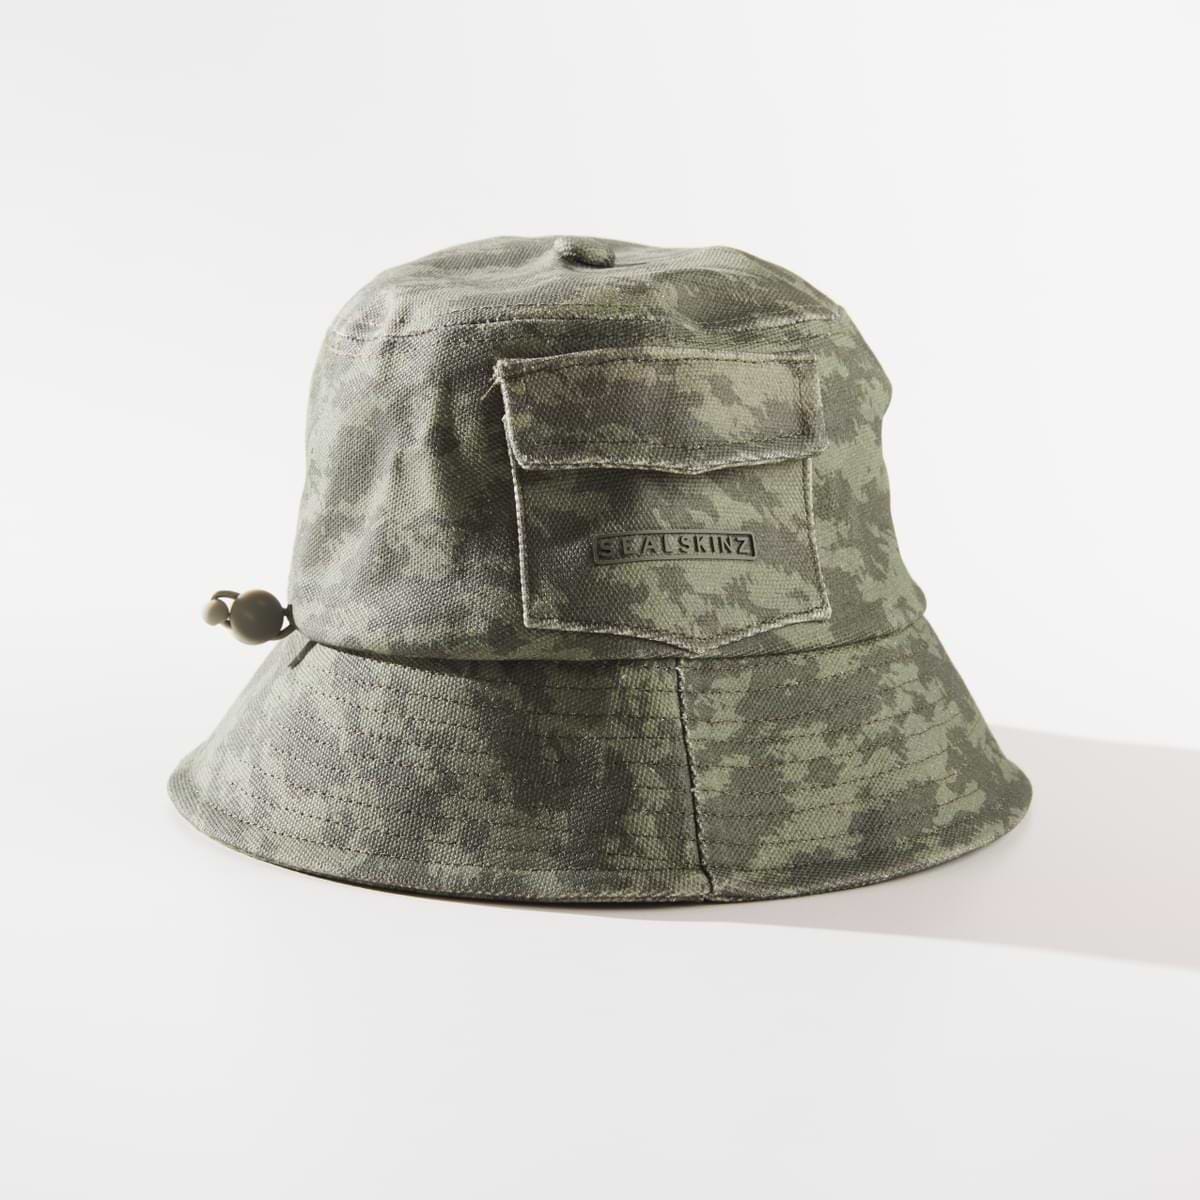 Lynford - Waterproof Bucket Hat